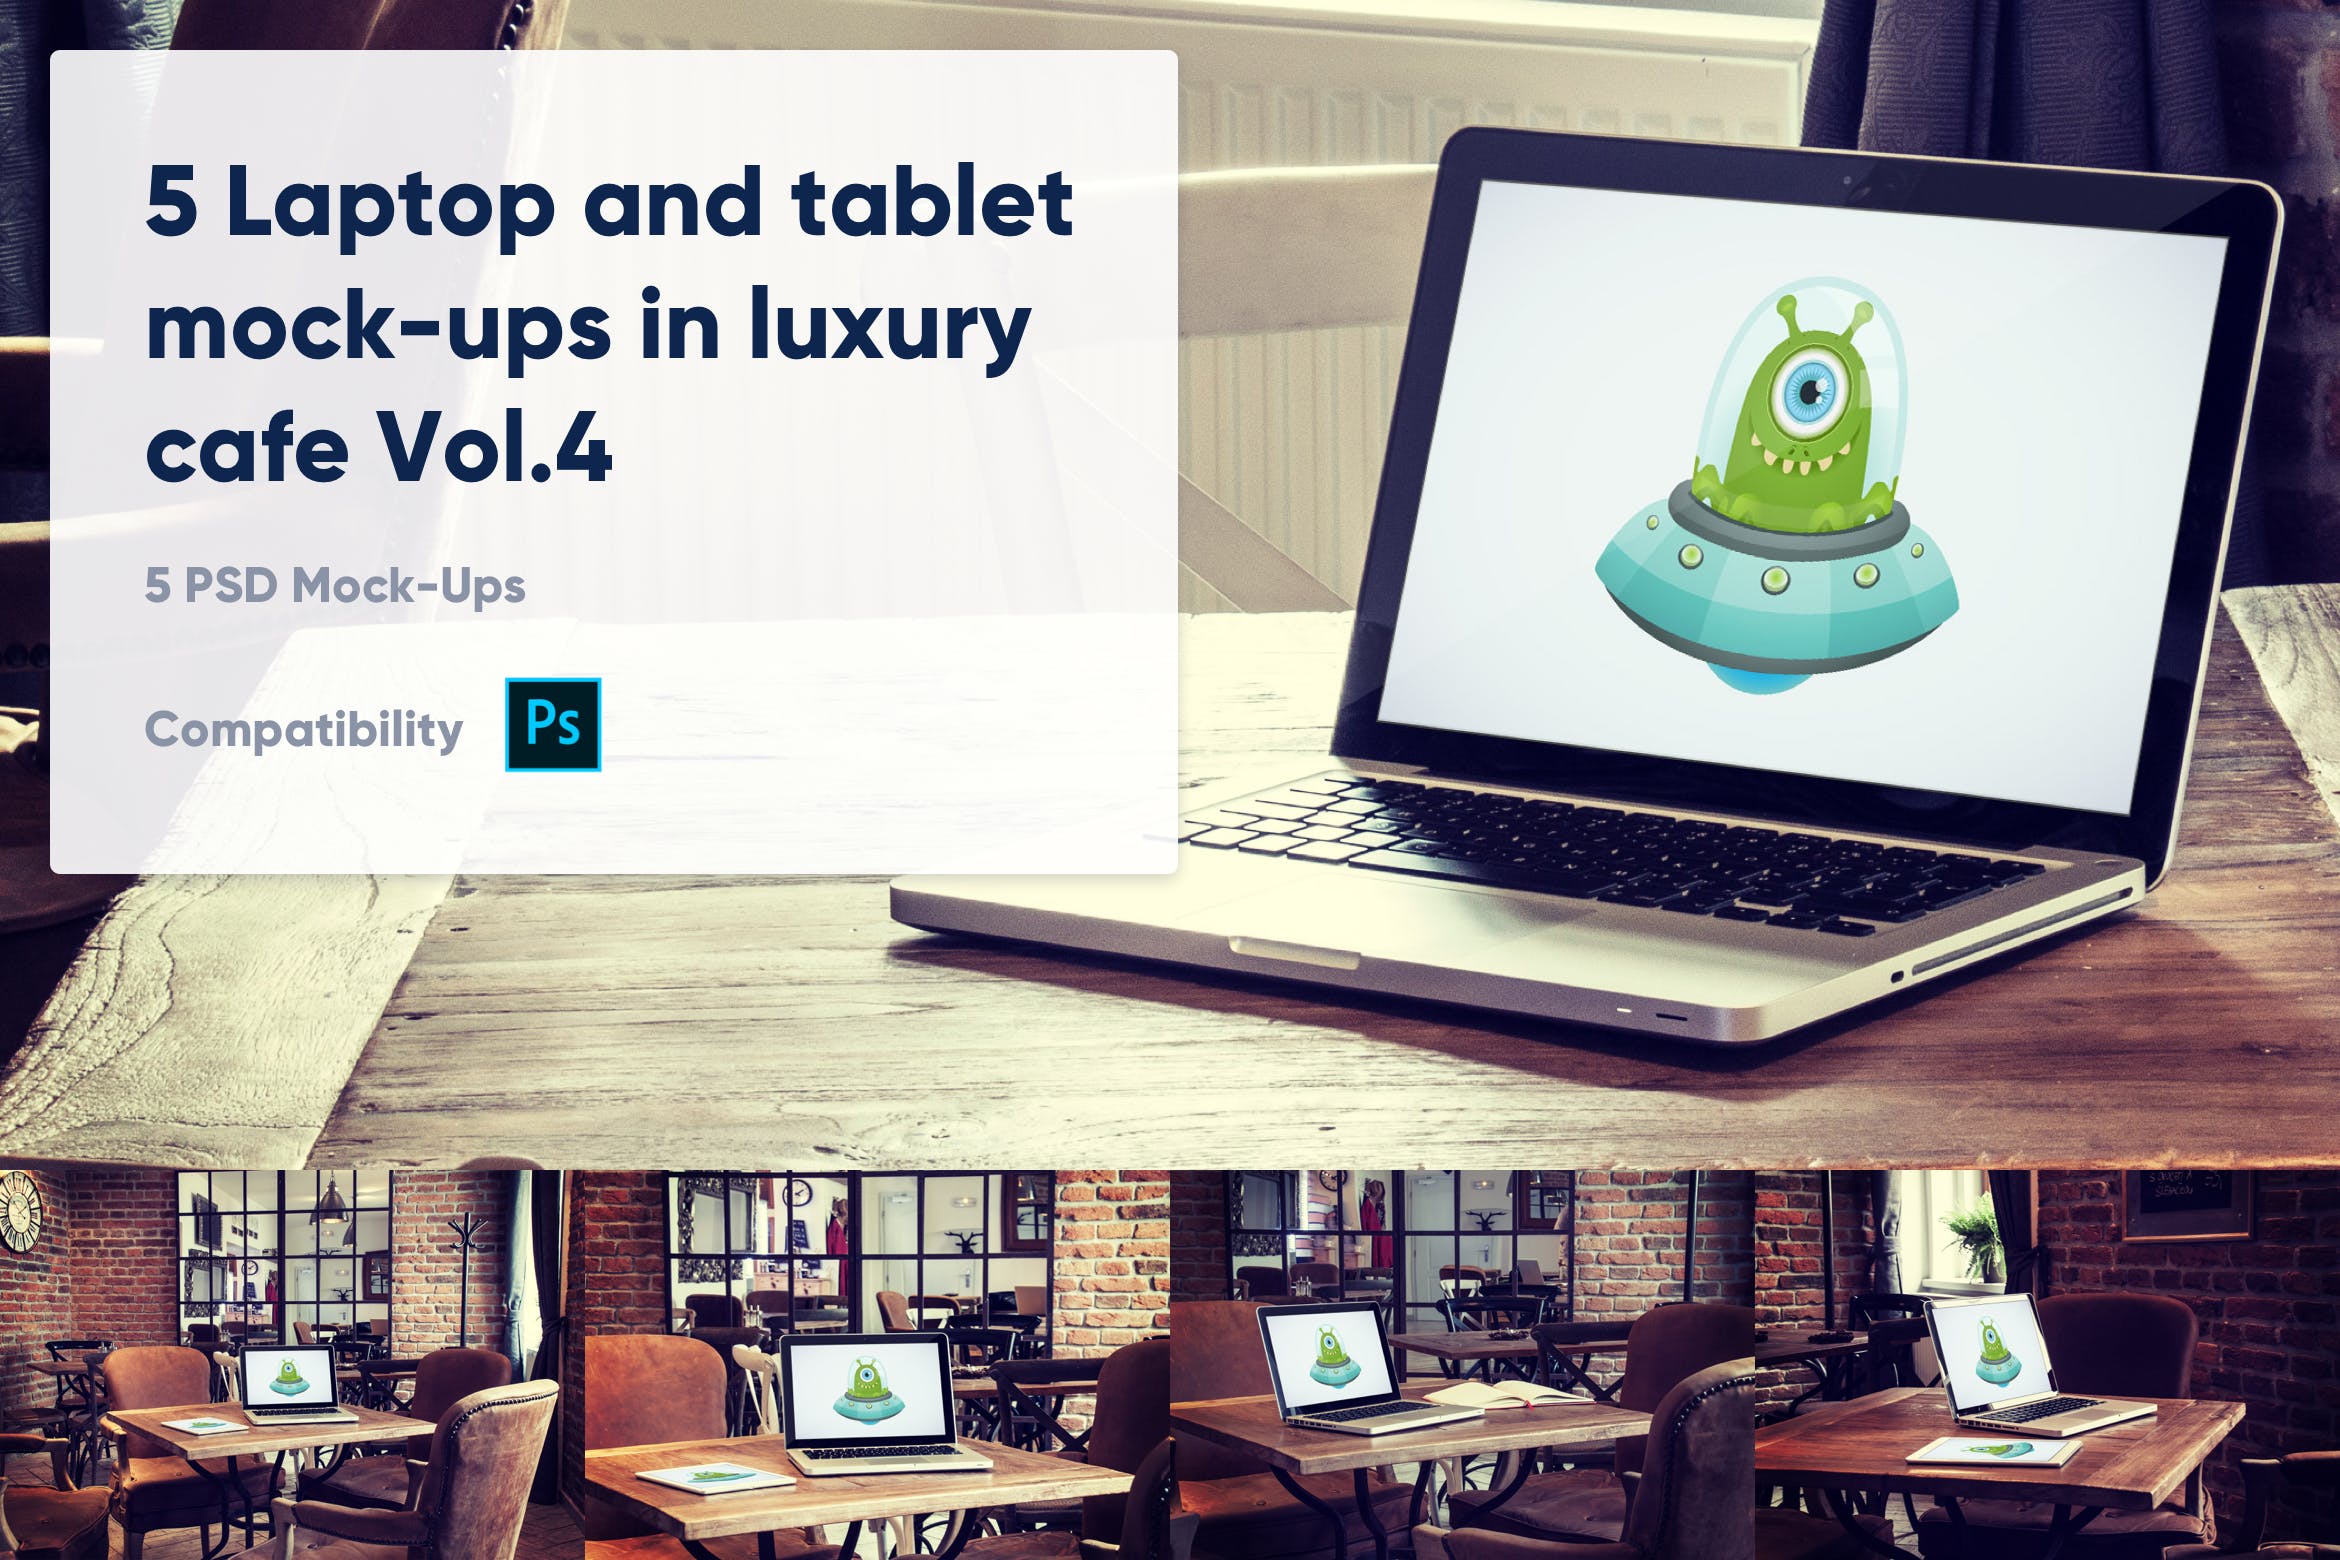 咖啡店场景MacBook&iPad屏幕预览素材库精选样机模板v4 5 Laptop and tablet mock-ups in cafe Vol. 4插图